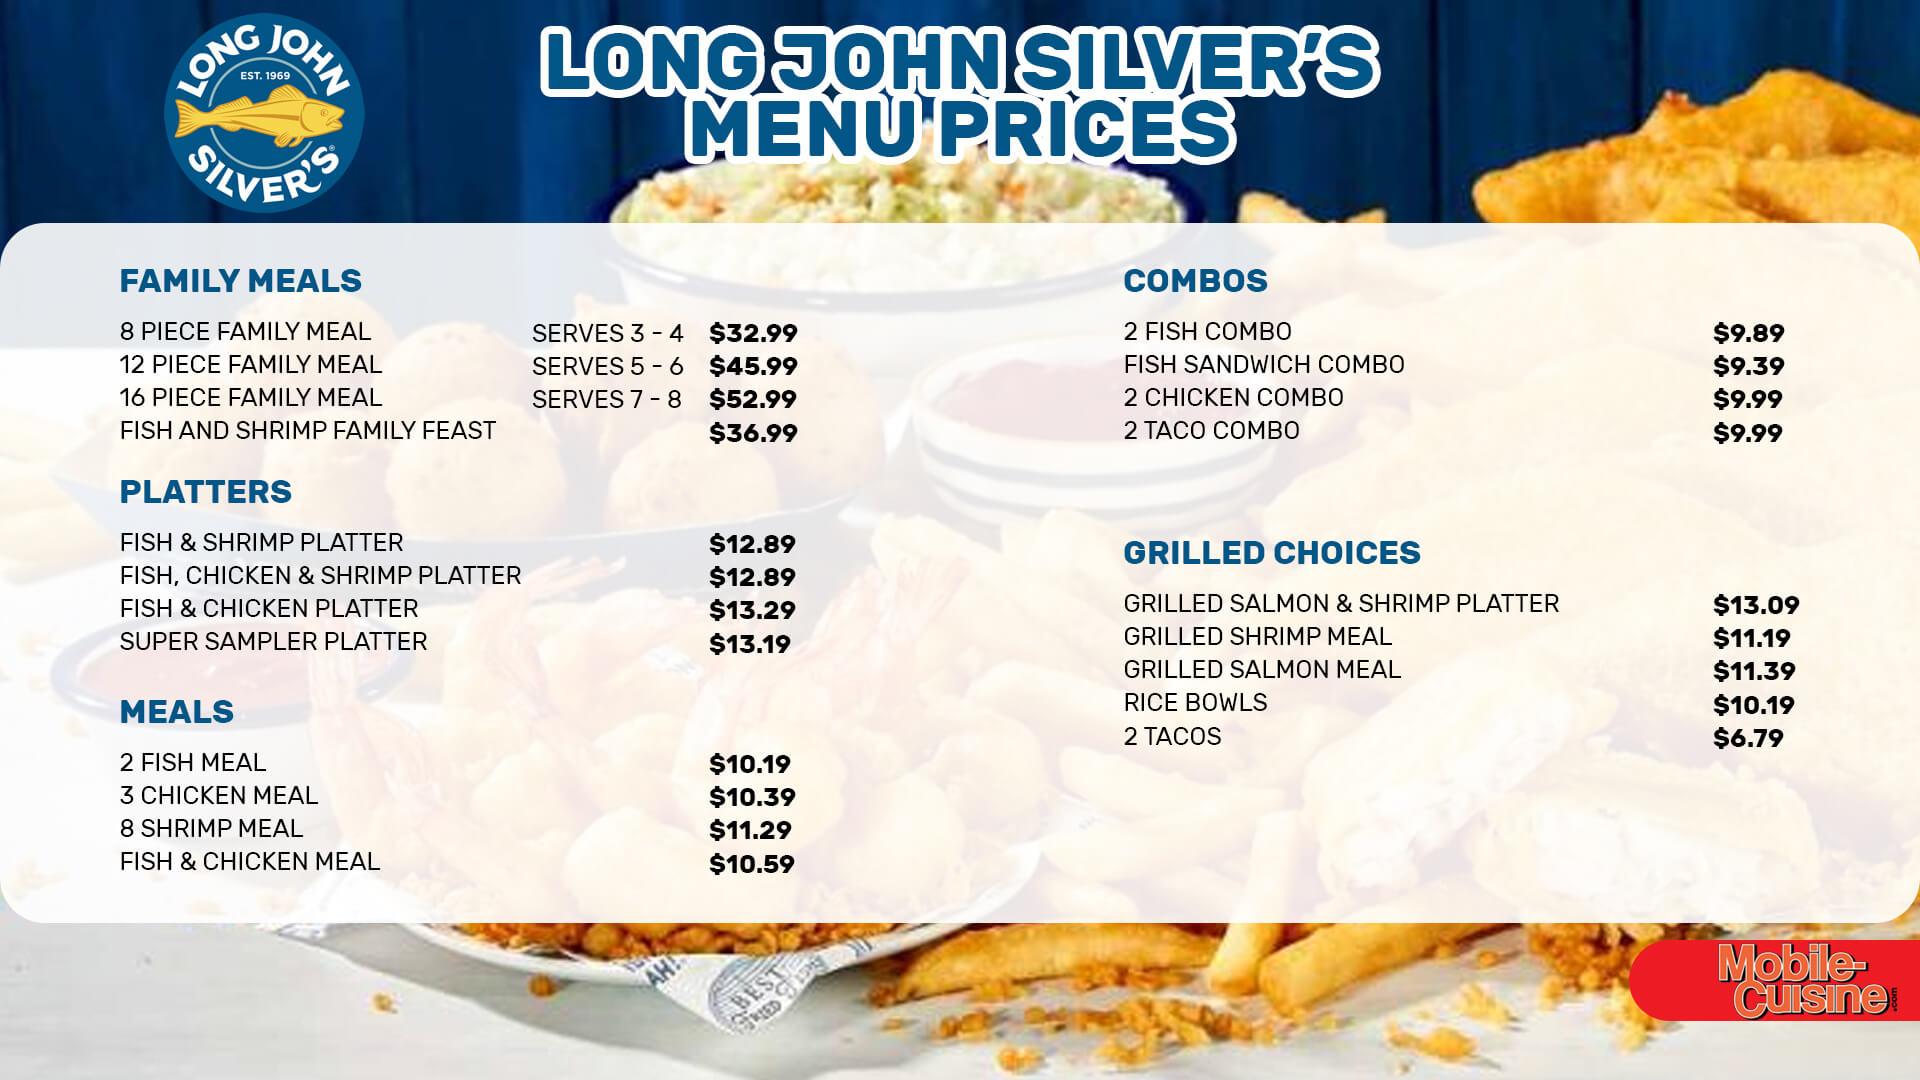 Long John Silver's menu prices